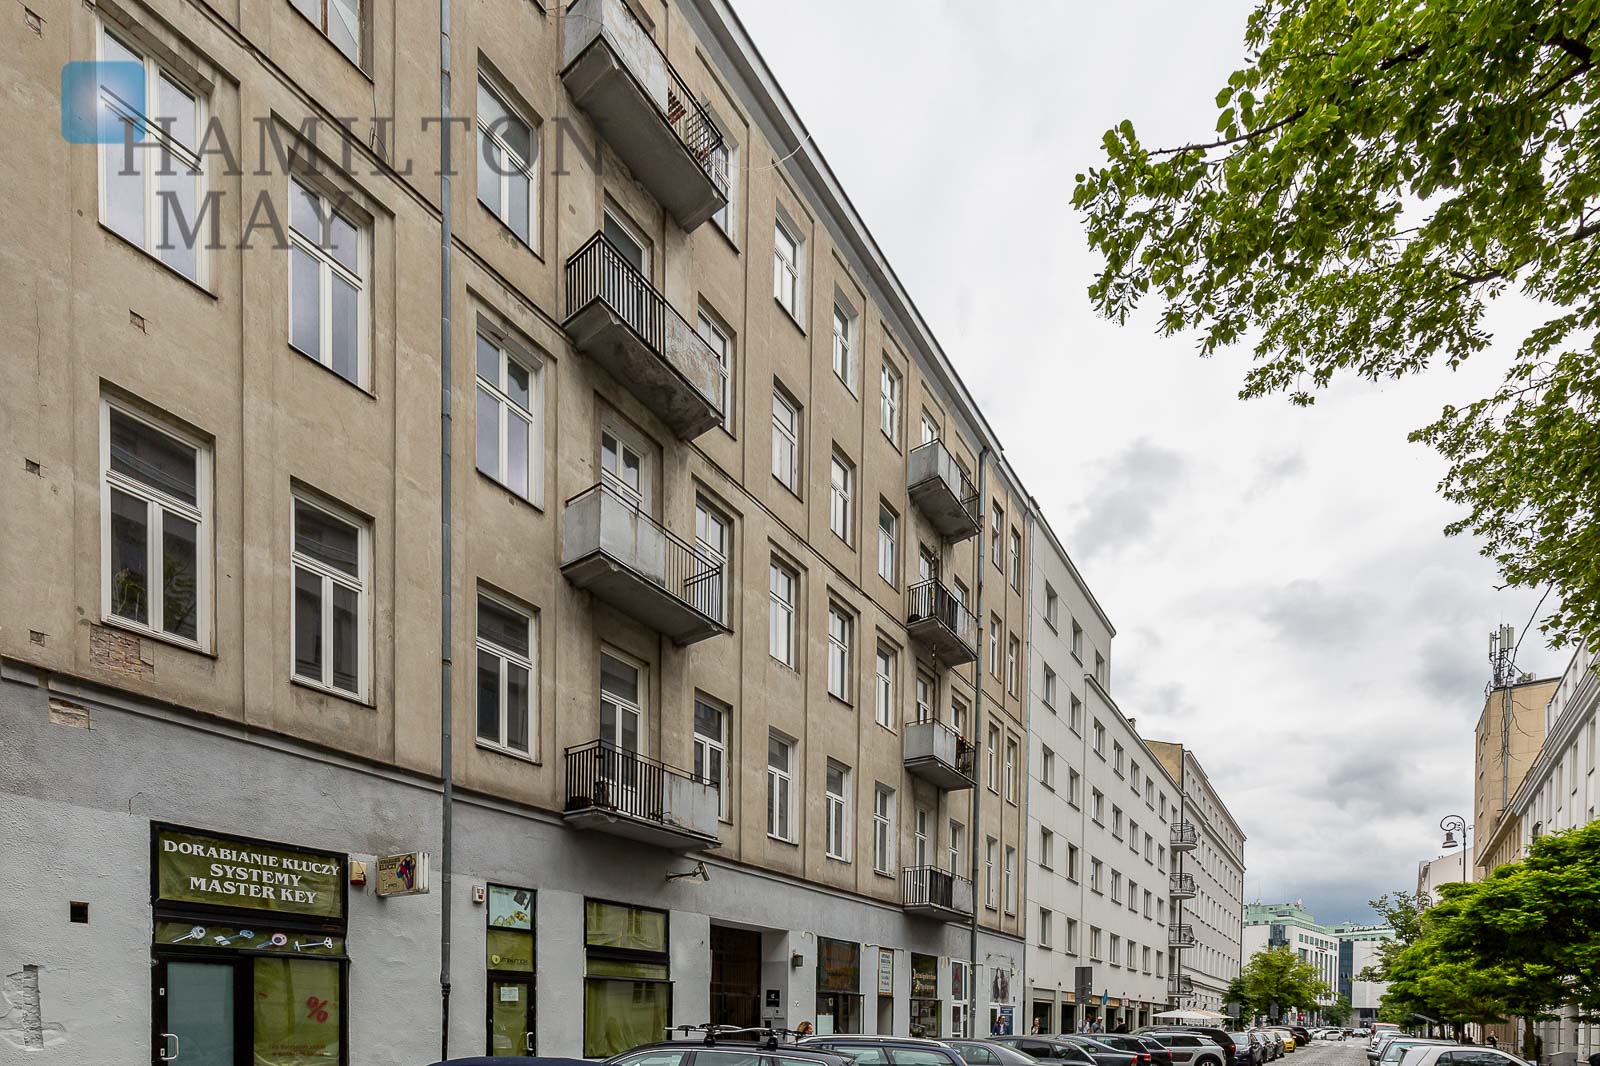 Unikatowy i stylowy apartament mieszczący się w przedwojennej kamienicy w centrum miasta Warszawa na sprzedaż